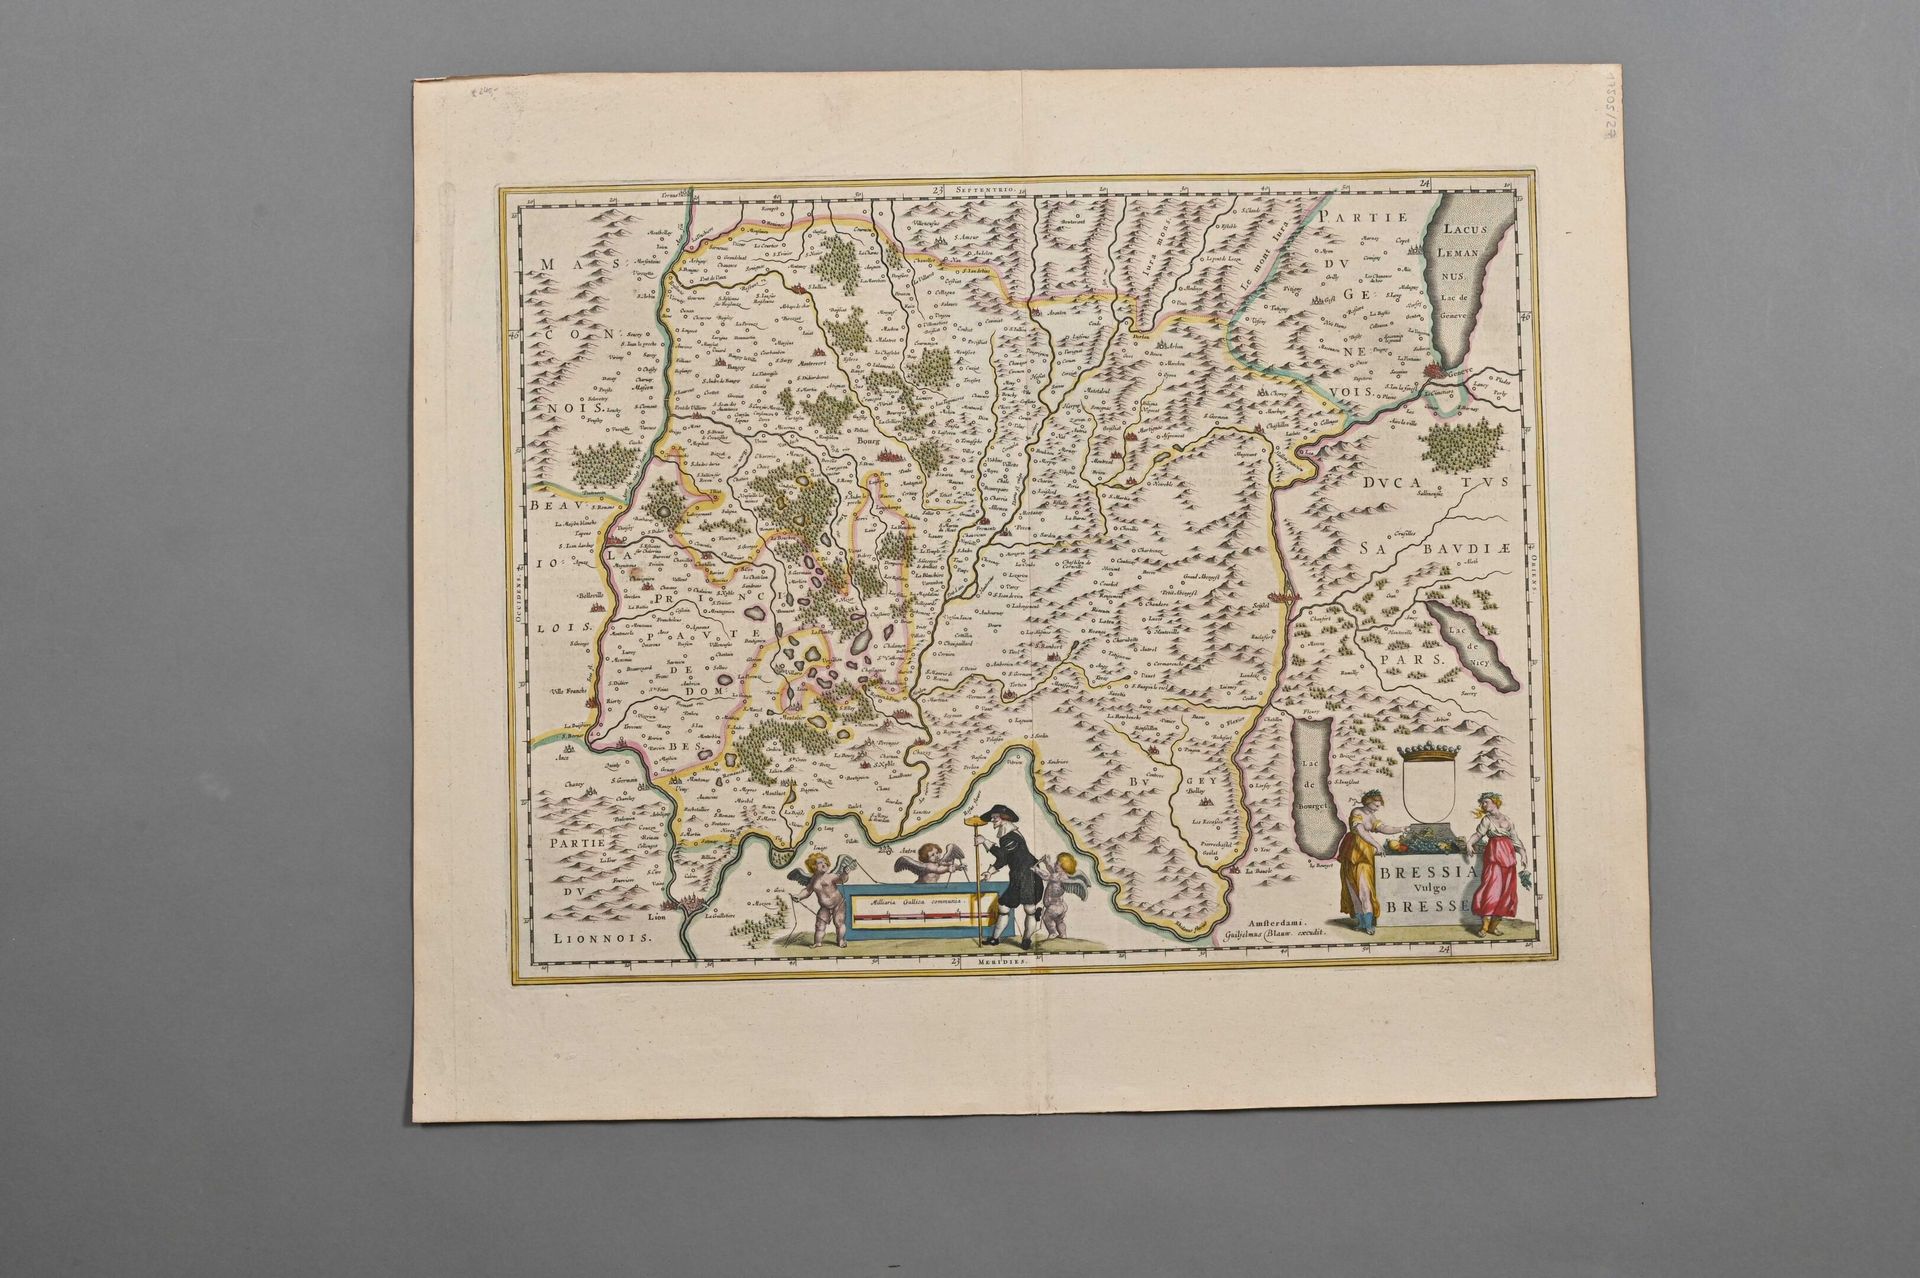 Null Bresse - Carta di Blaeur XVII secolo

prova su carta vergata di un'edizione&hellip;